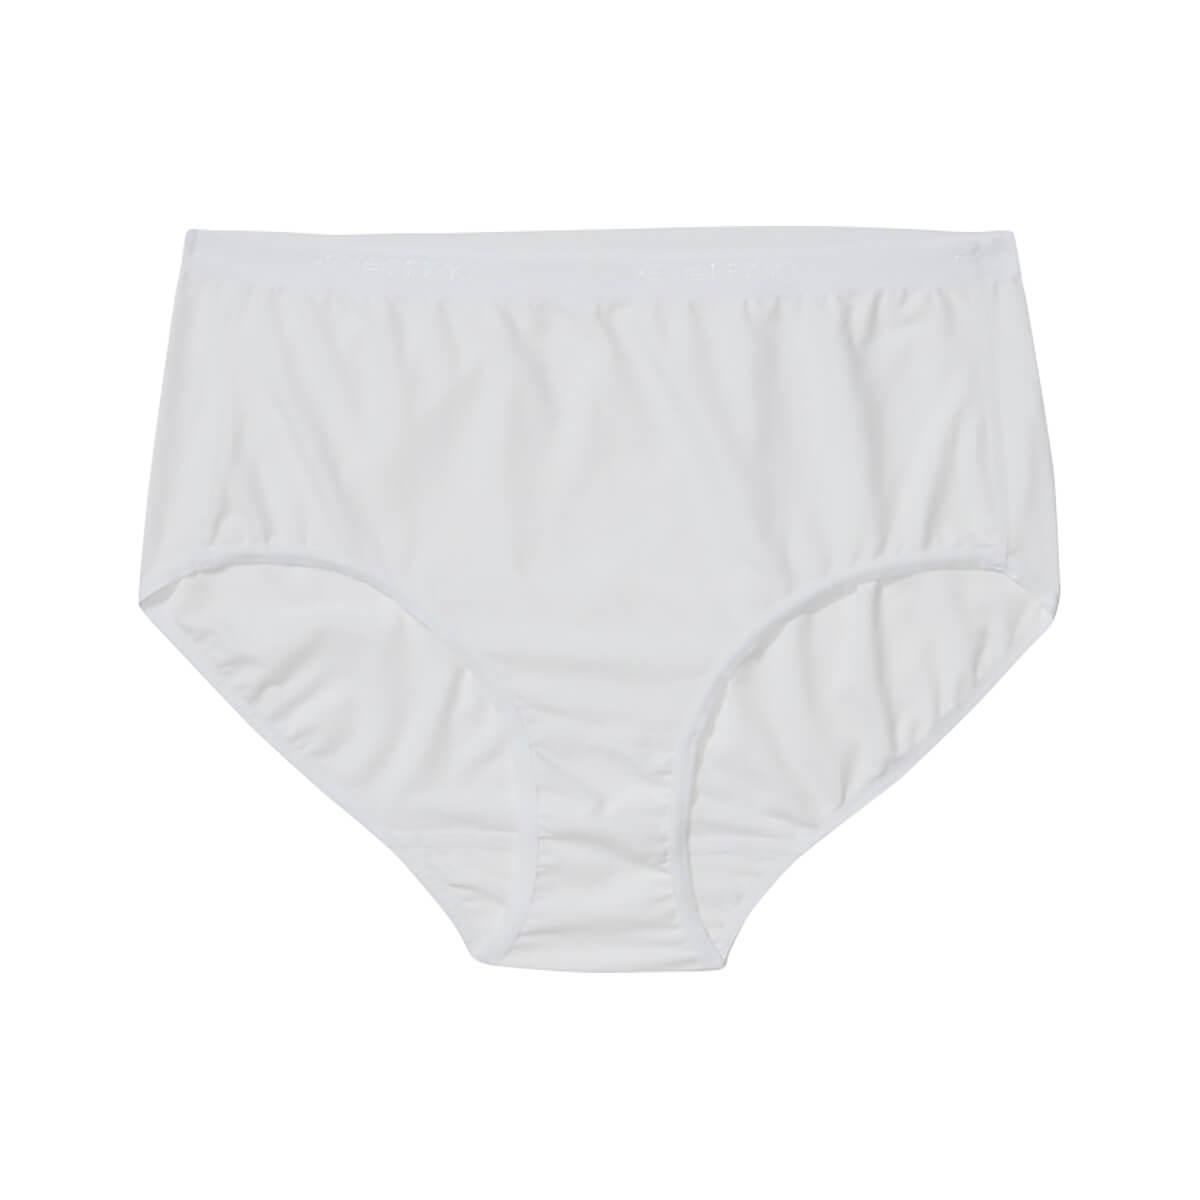 Exofficio Give-N-Go String Bikinis Quick Dry Travel Underwear